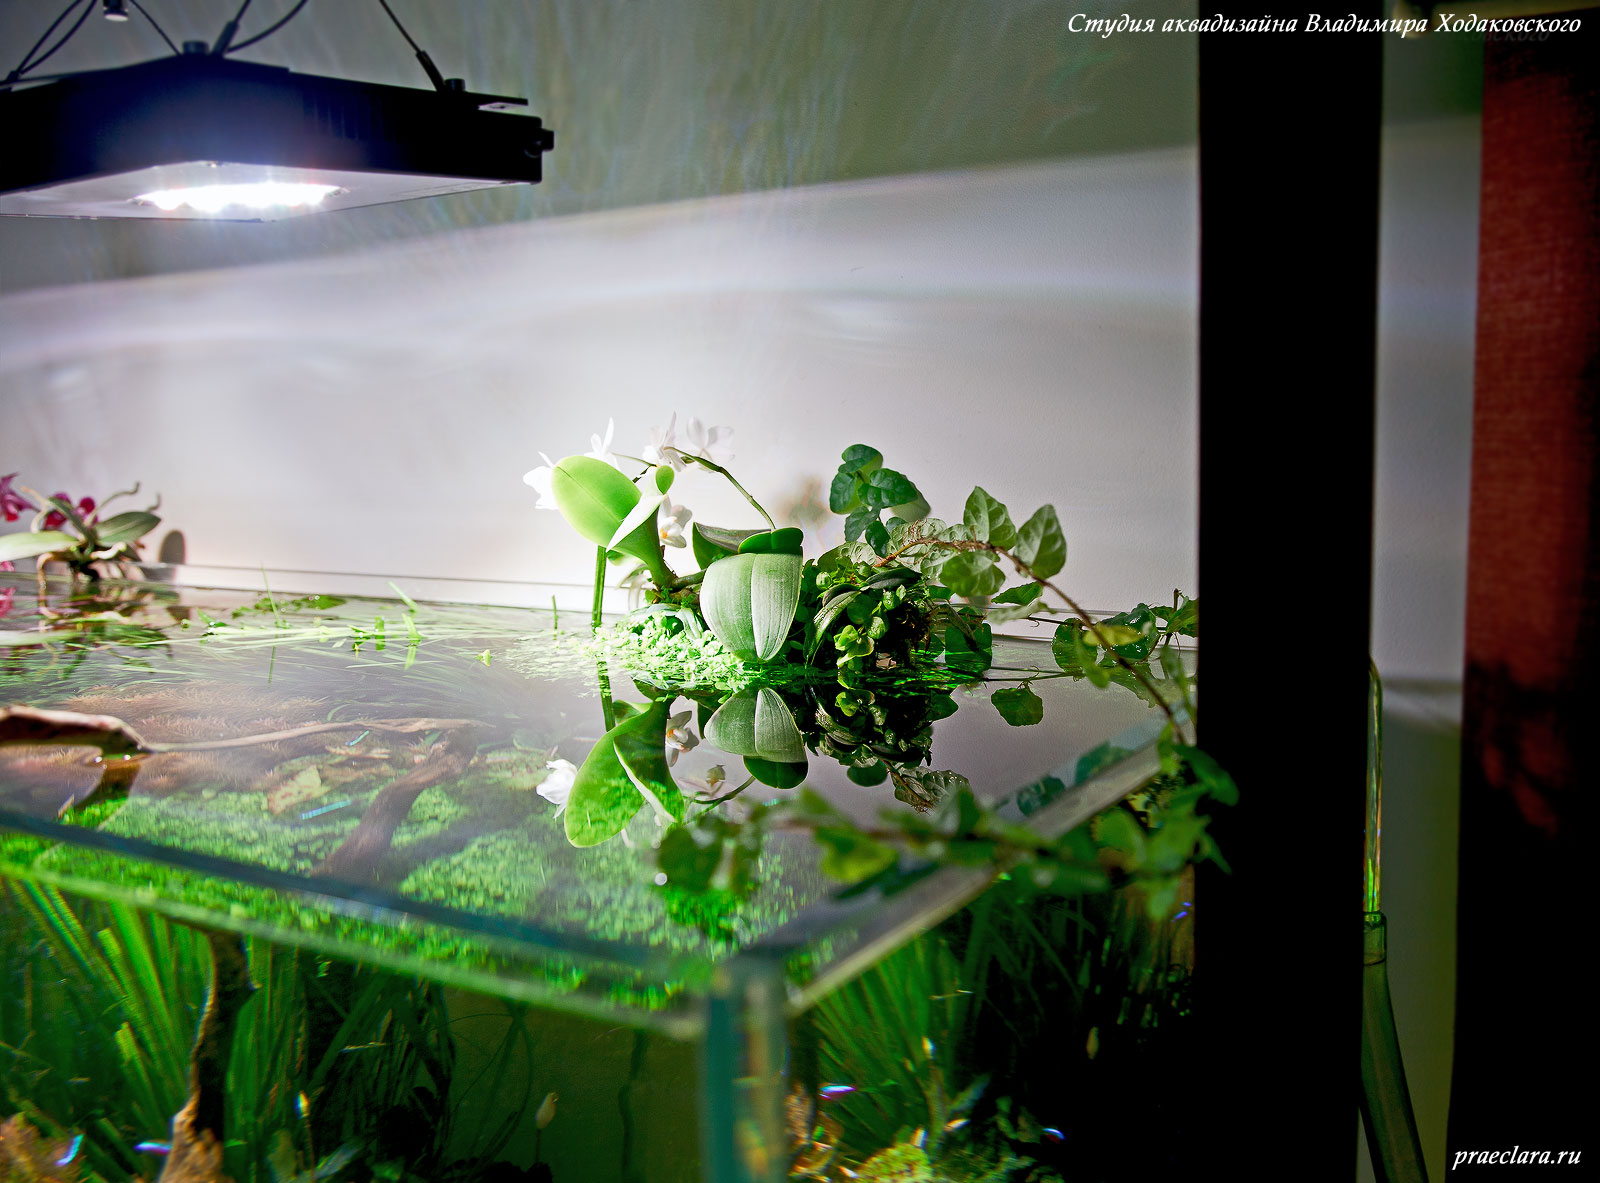 Светодиодные светильники в растительном аквариуме: в поисках идеала